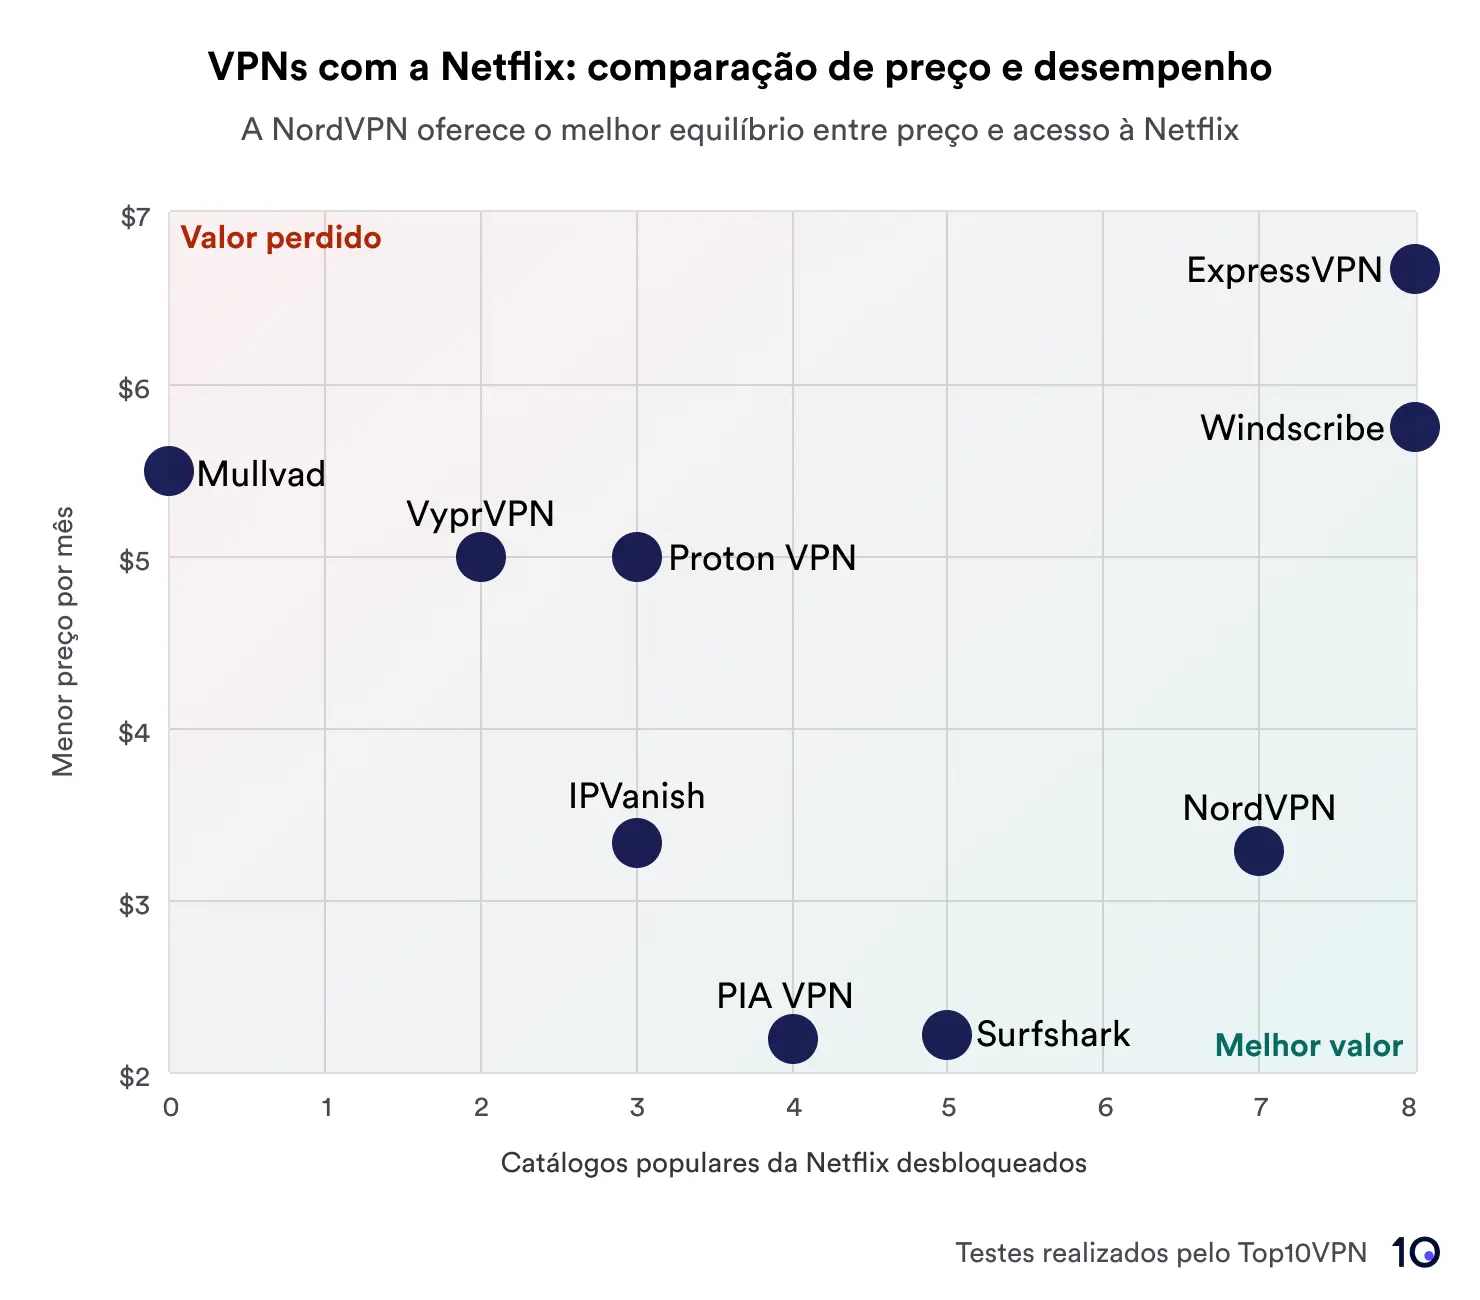 Gráfico de dispersão mostrando uma comparação de serviços VPN com base no preço versus desempenho no desbloqueio de bibliotecas Netflix. NordVPN e CyberGhost destacam-se por oferecer o melhor valor, representados na área marcada como 